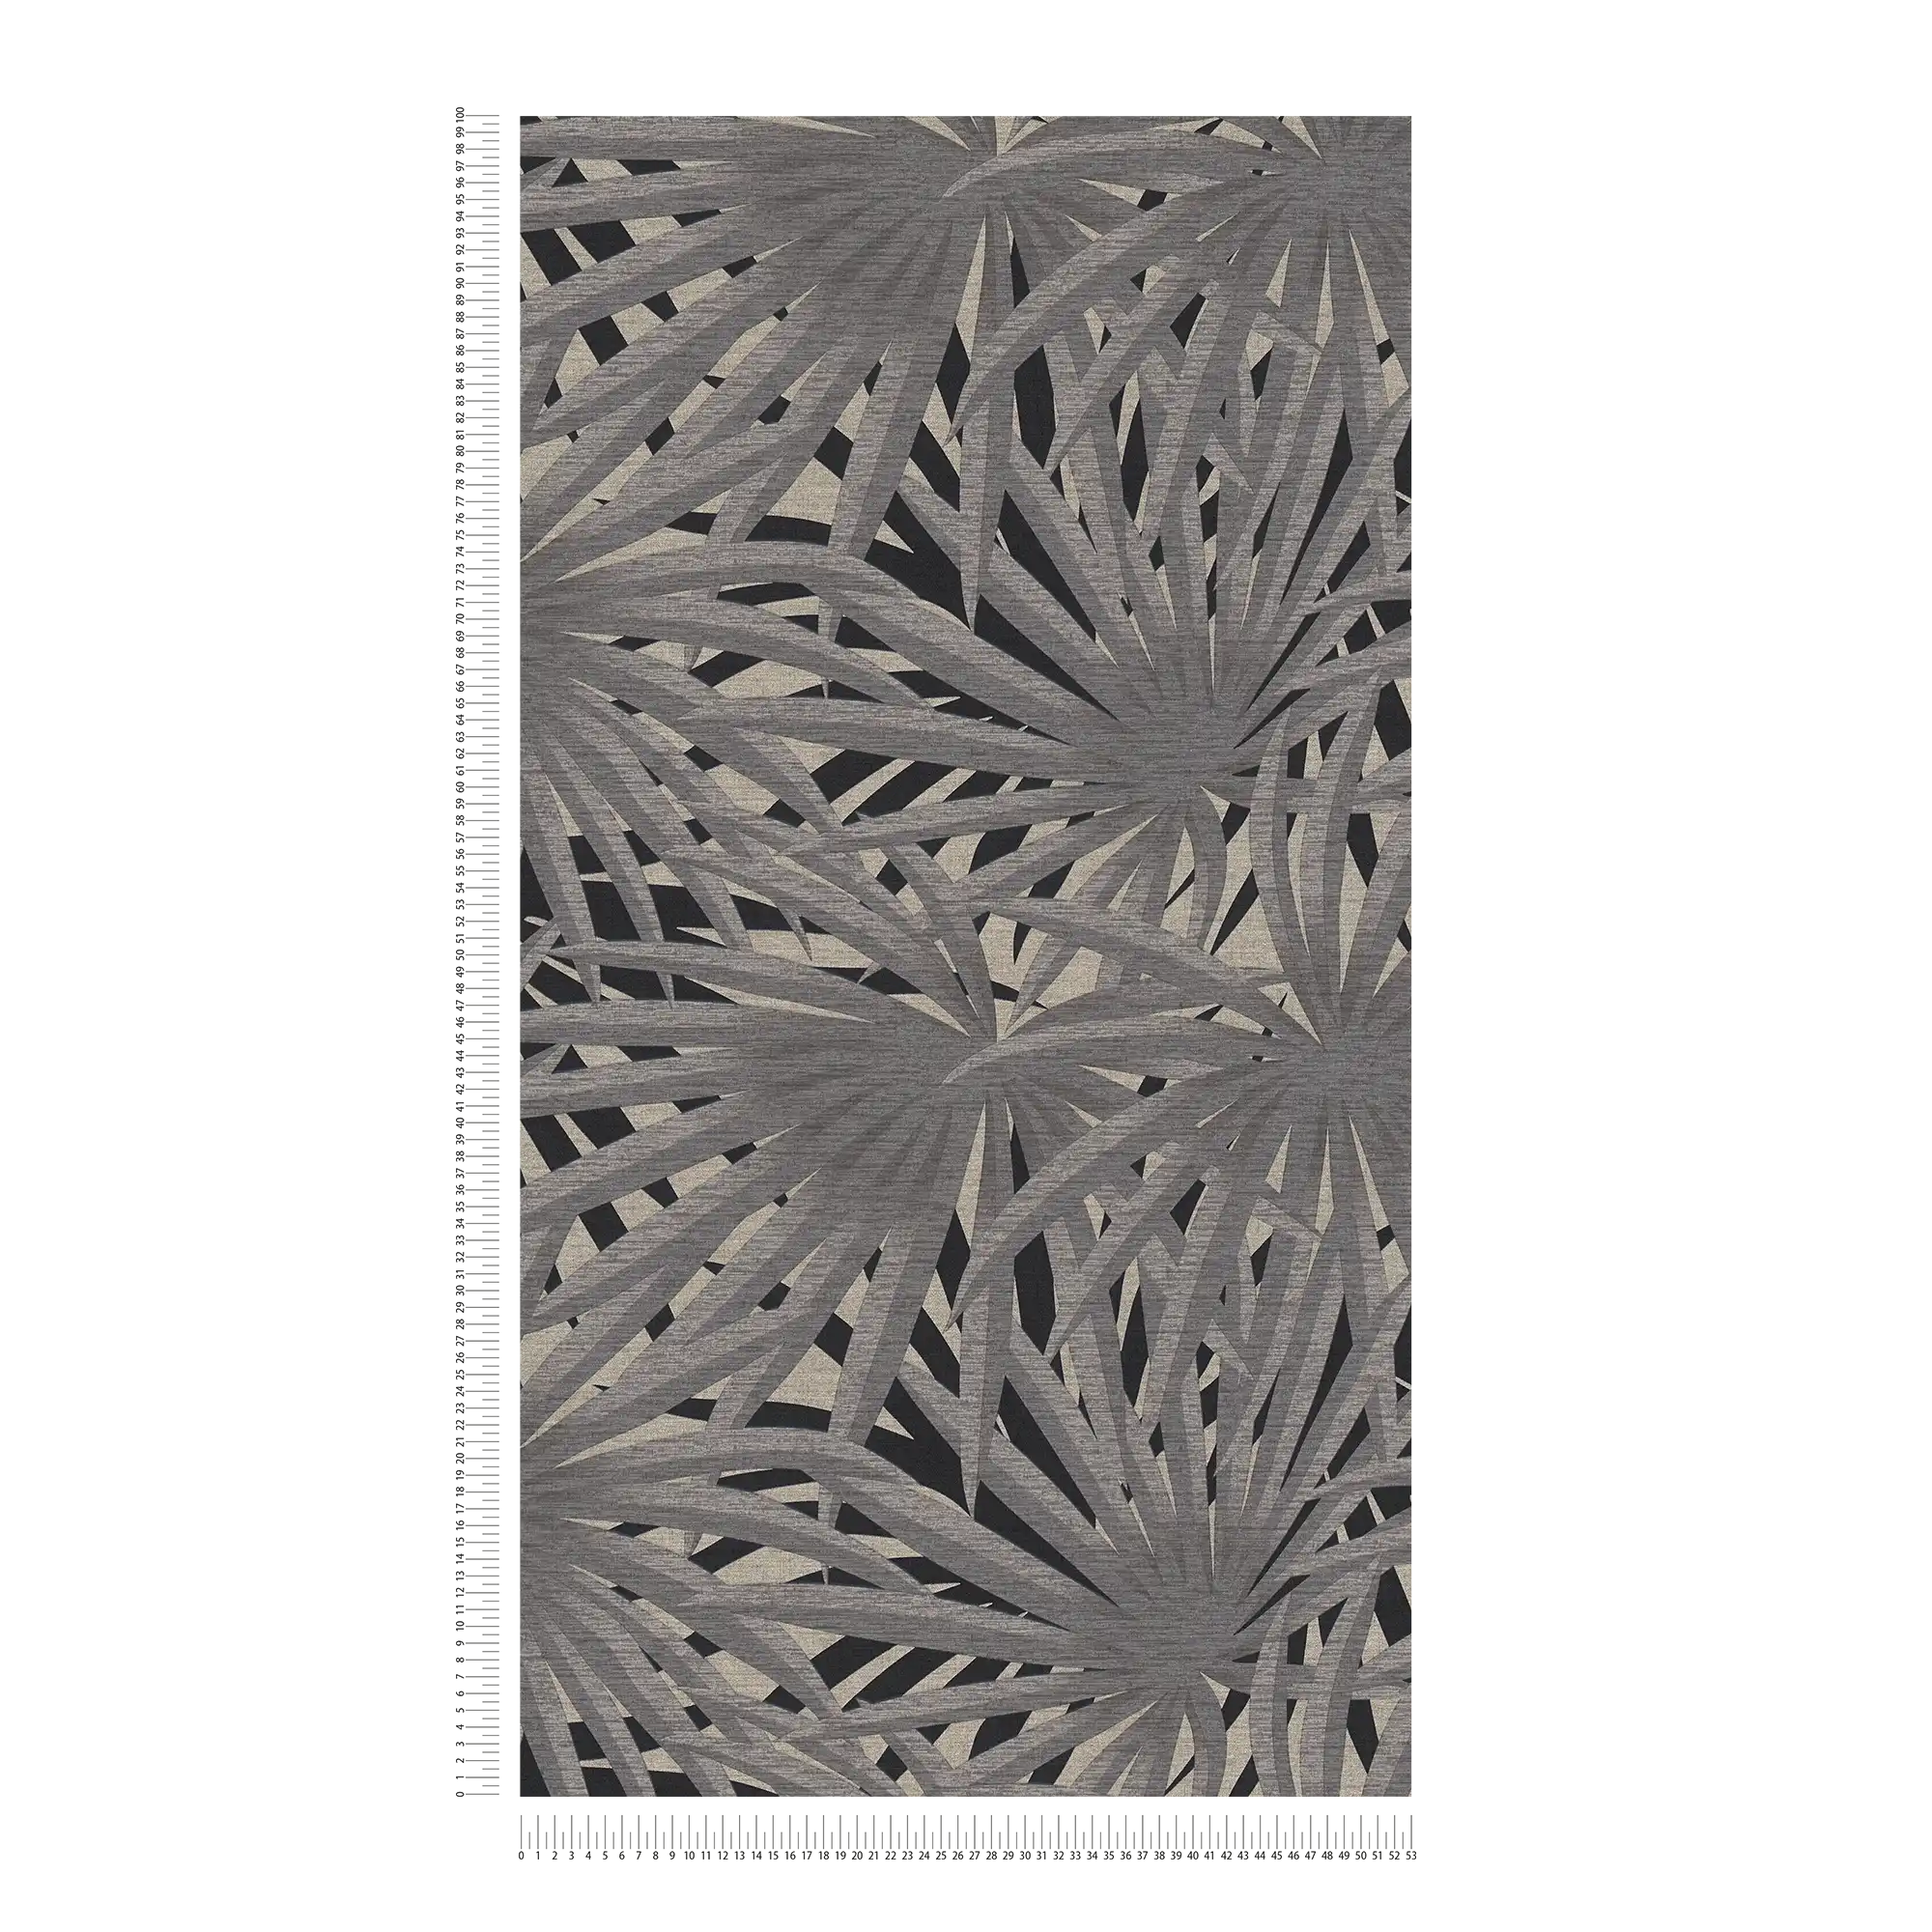             Carta da parati in tessuto non tessuto con effetto metallizzato - grigio, metallizzato, nero
        